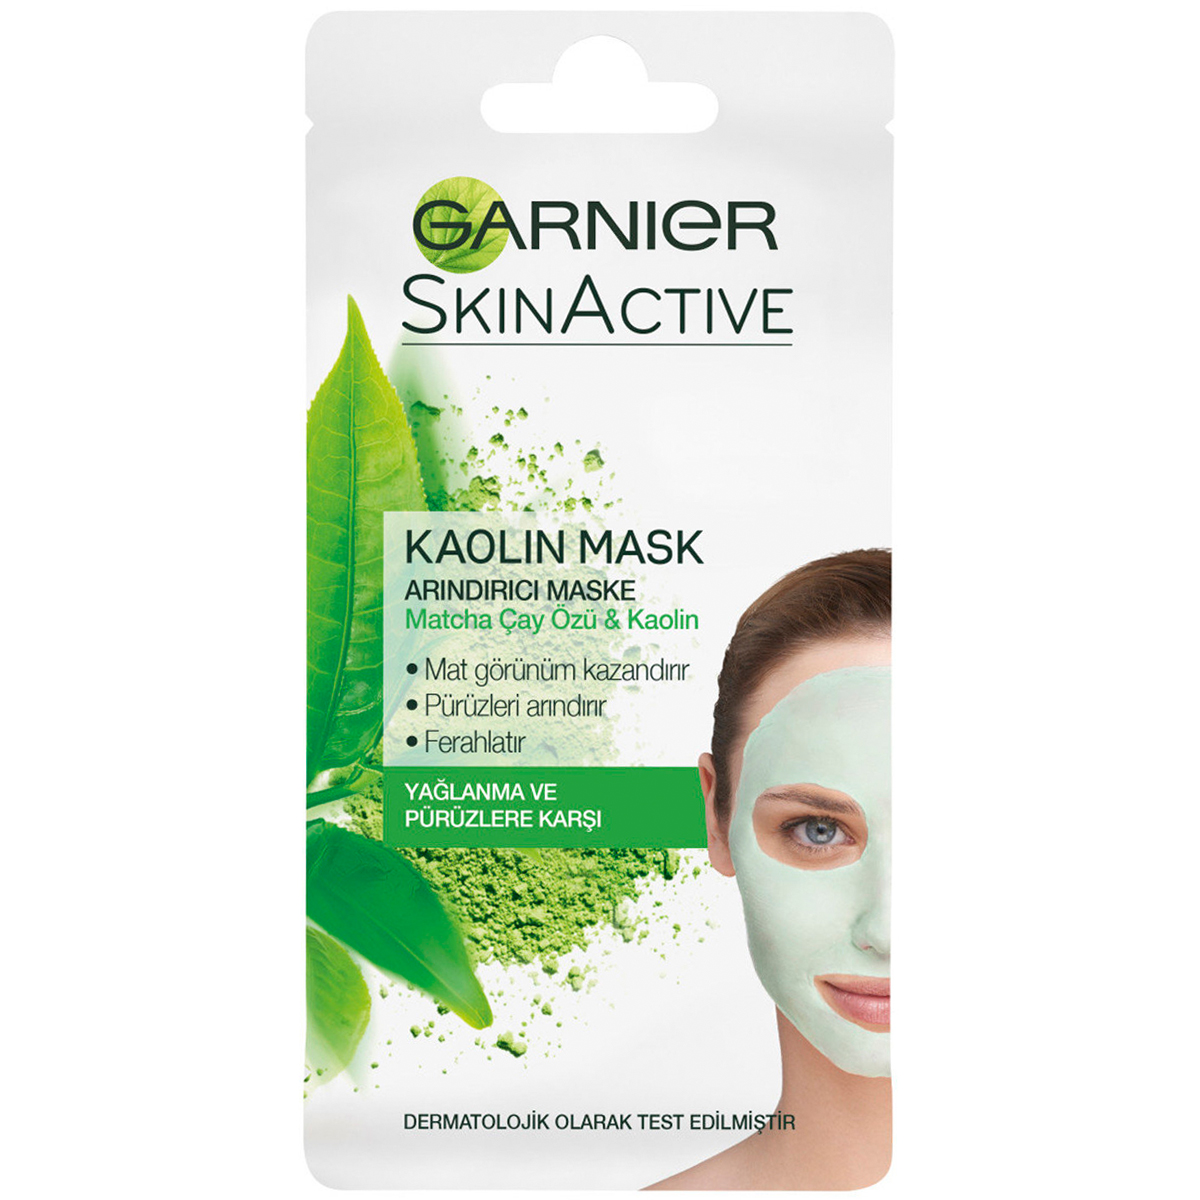 Garnier Skinactive Kaolin Mask Arındırıcı Maske